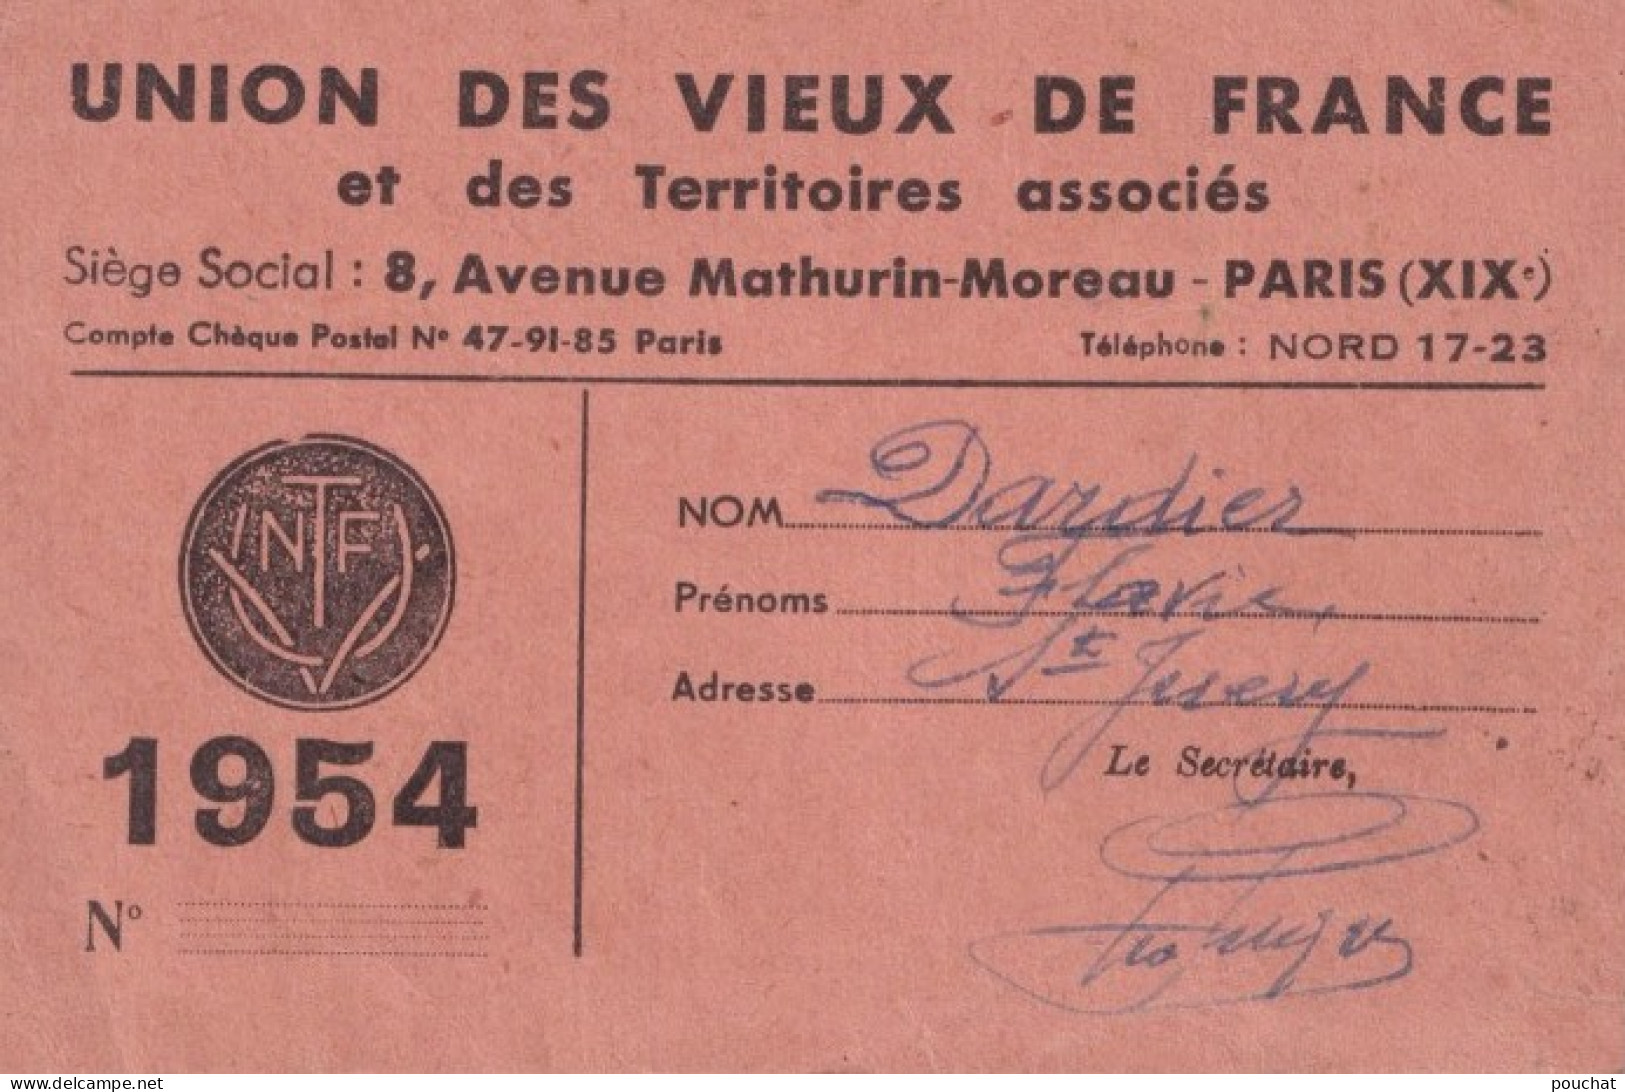 CARTE DE MEMBRE UNION DES VIEUX DE FRANCE ET DES TERRITOIRE ASSOCIES - PARIS  8 AVENUE MATHURIN MOREAU - 1954 - 2 SCANS  - Documenti Storici